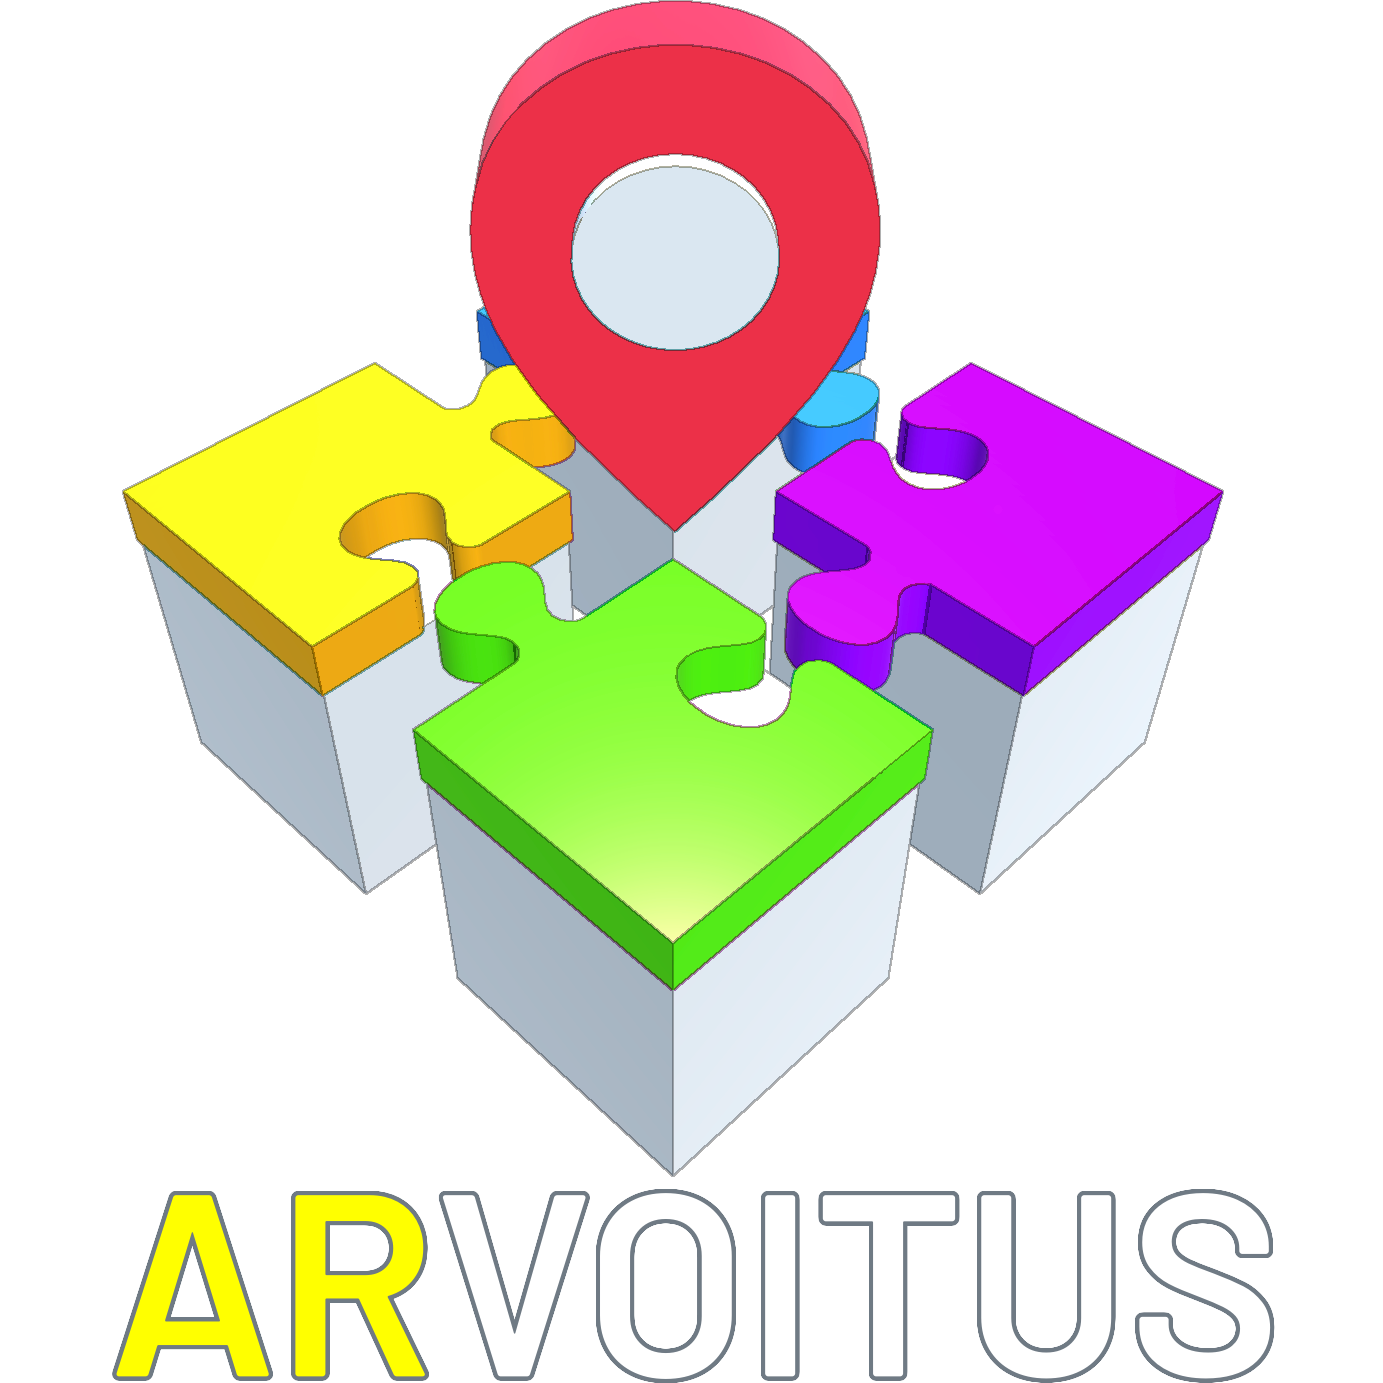 Arvoitus, Helsinki XR Center Developer Hub team